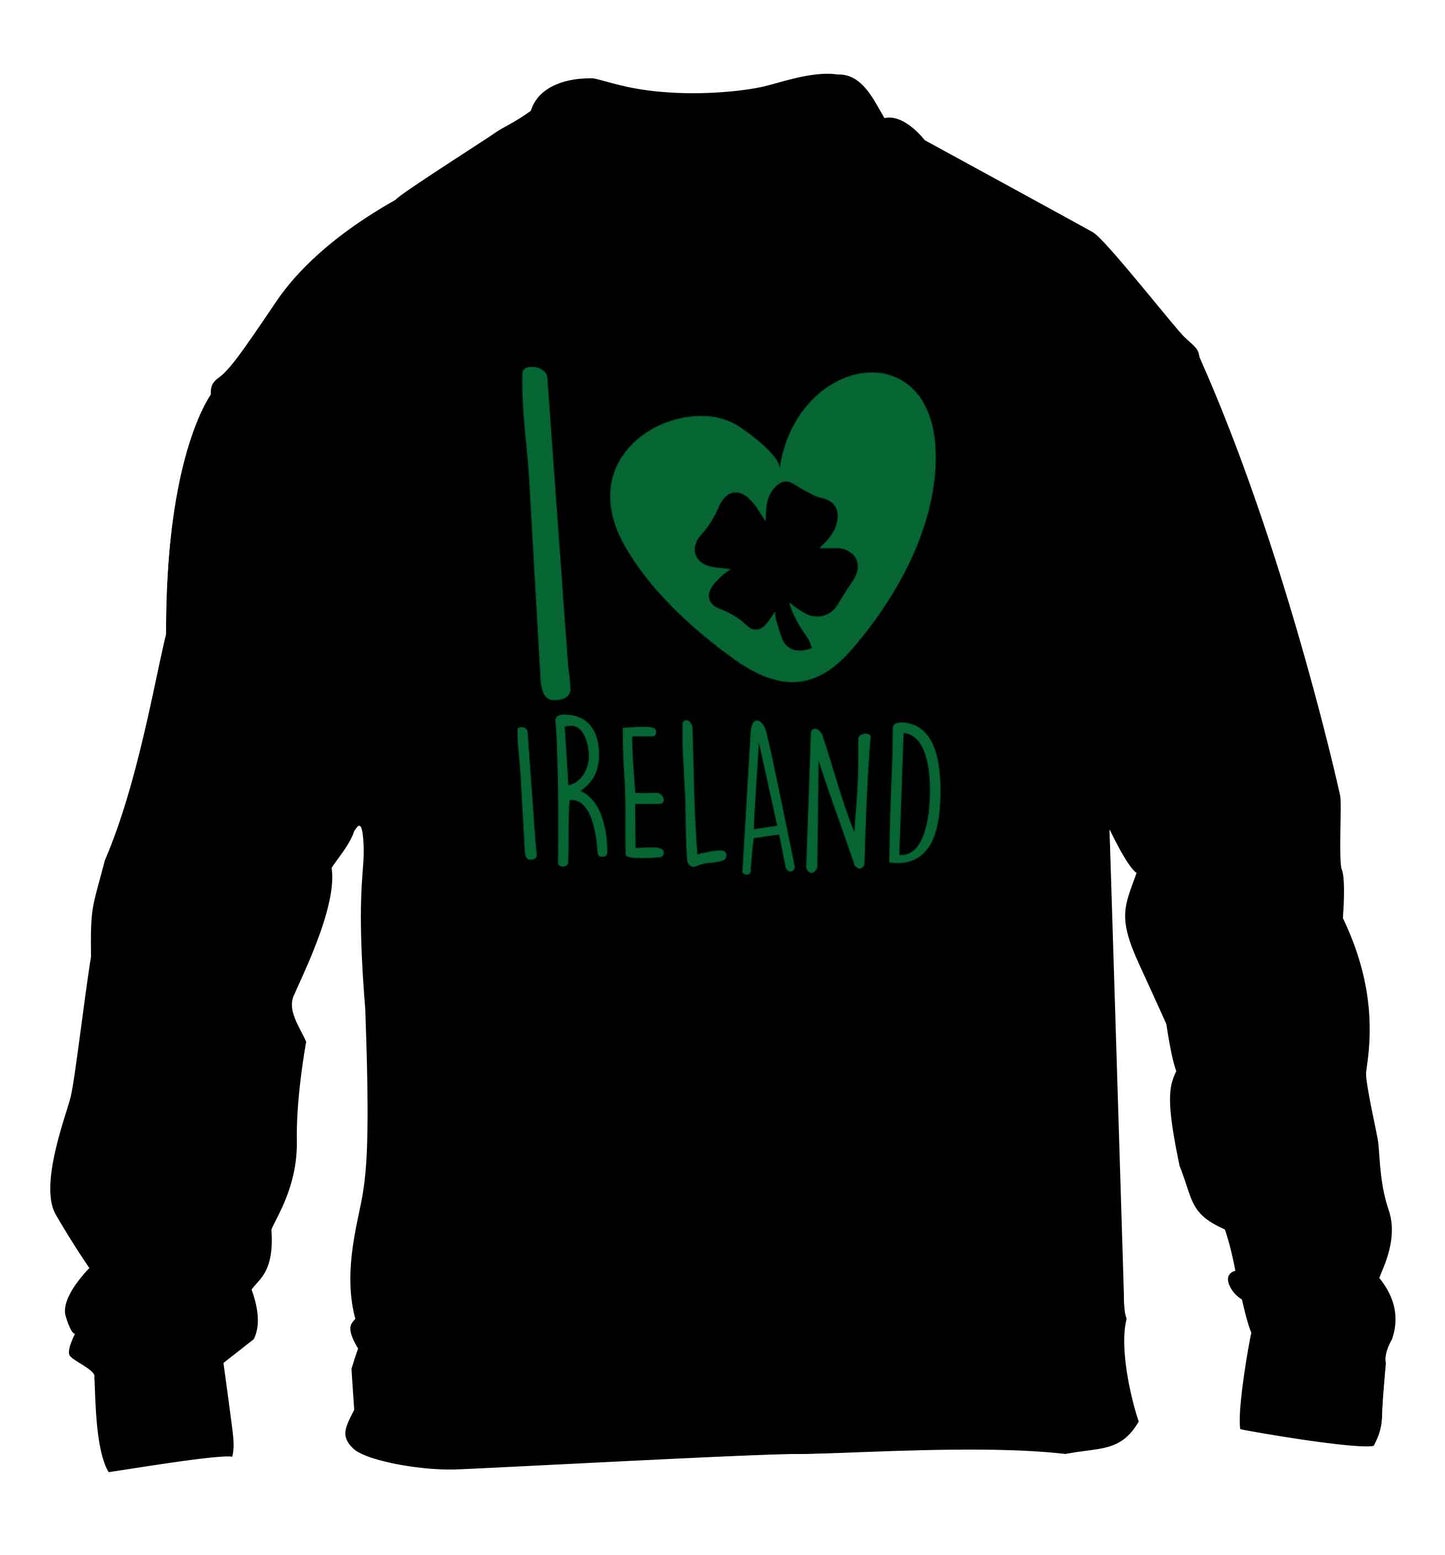 I love Ireland children's black sweater 12-13 Years